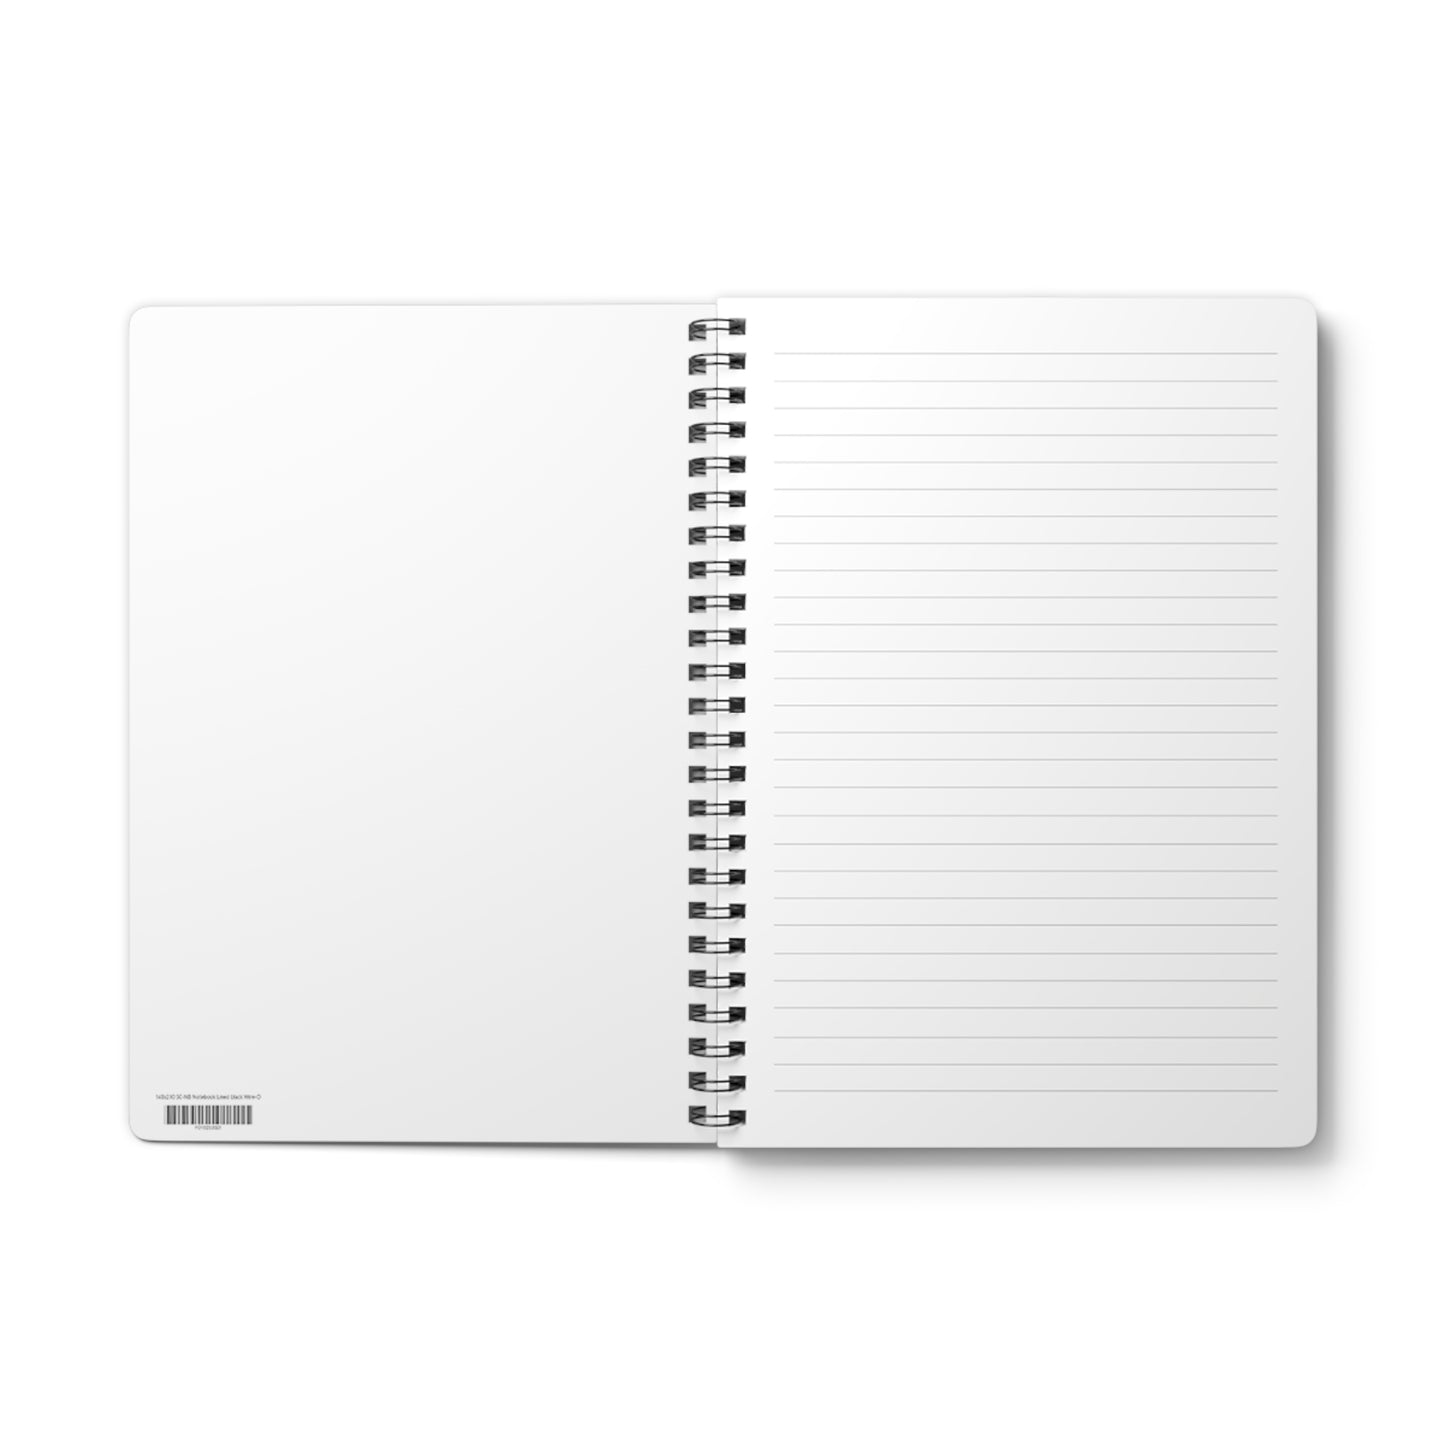 Twerk - A5 Wirebound Notebook